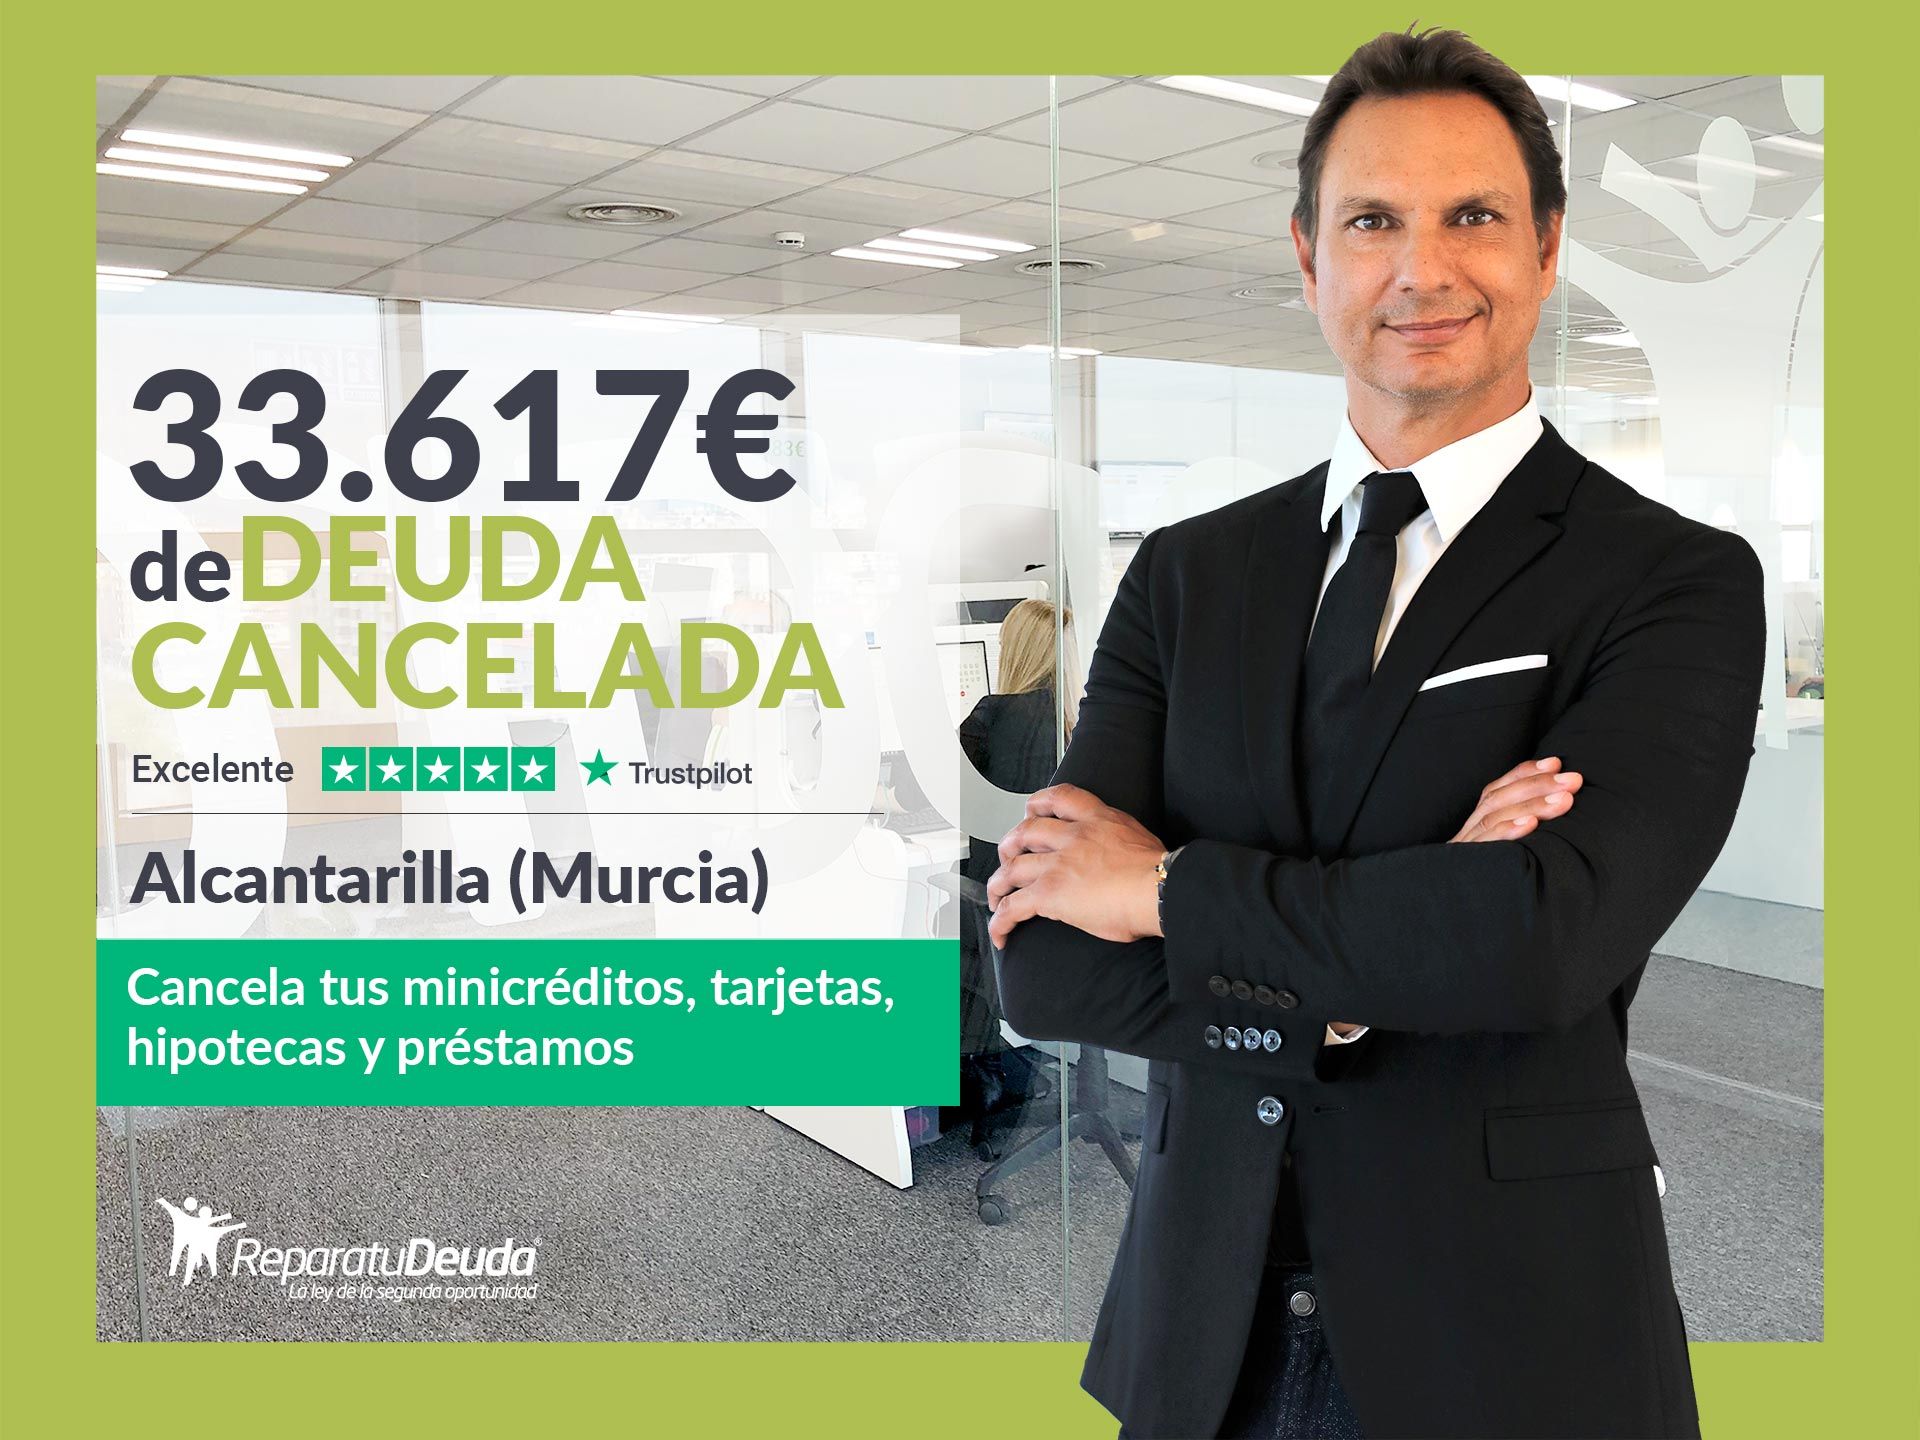 Repara tu Deuda Abogados cancela 33.617? en Alcantarilla (Murcia) con la Ley de Segunda Oportunidad